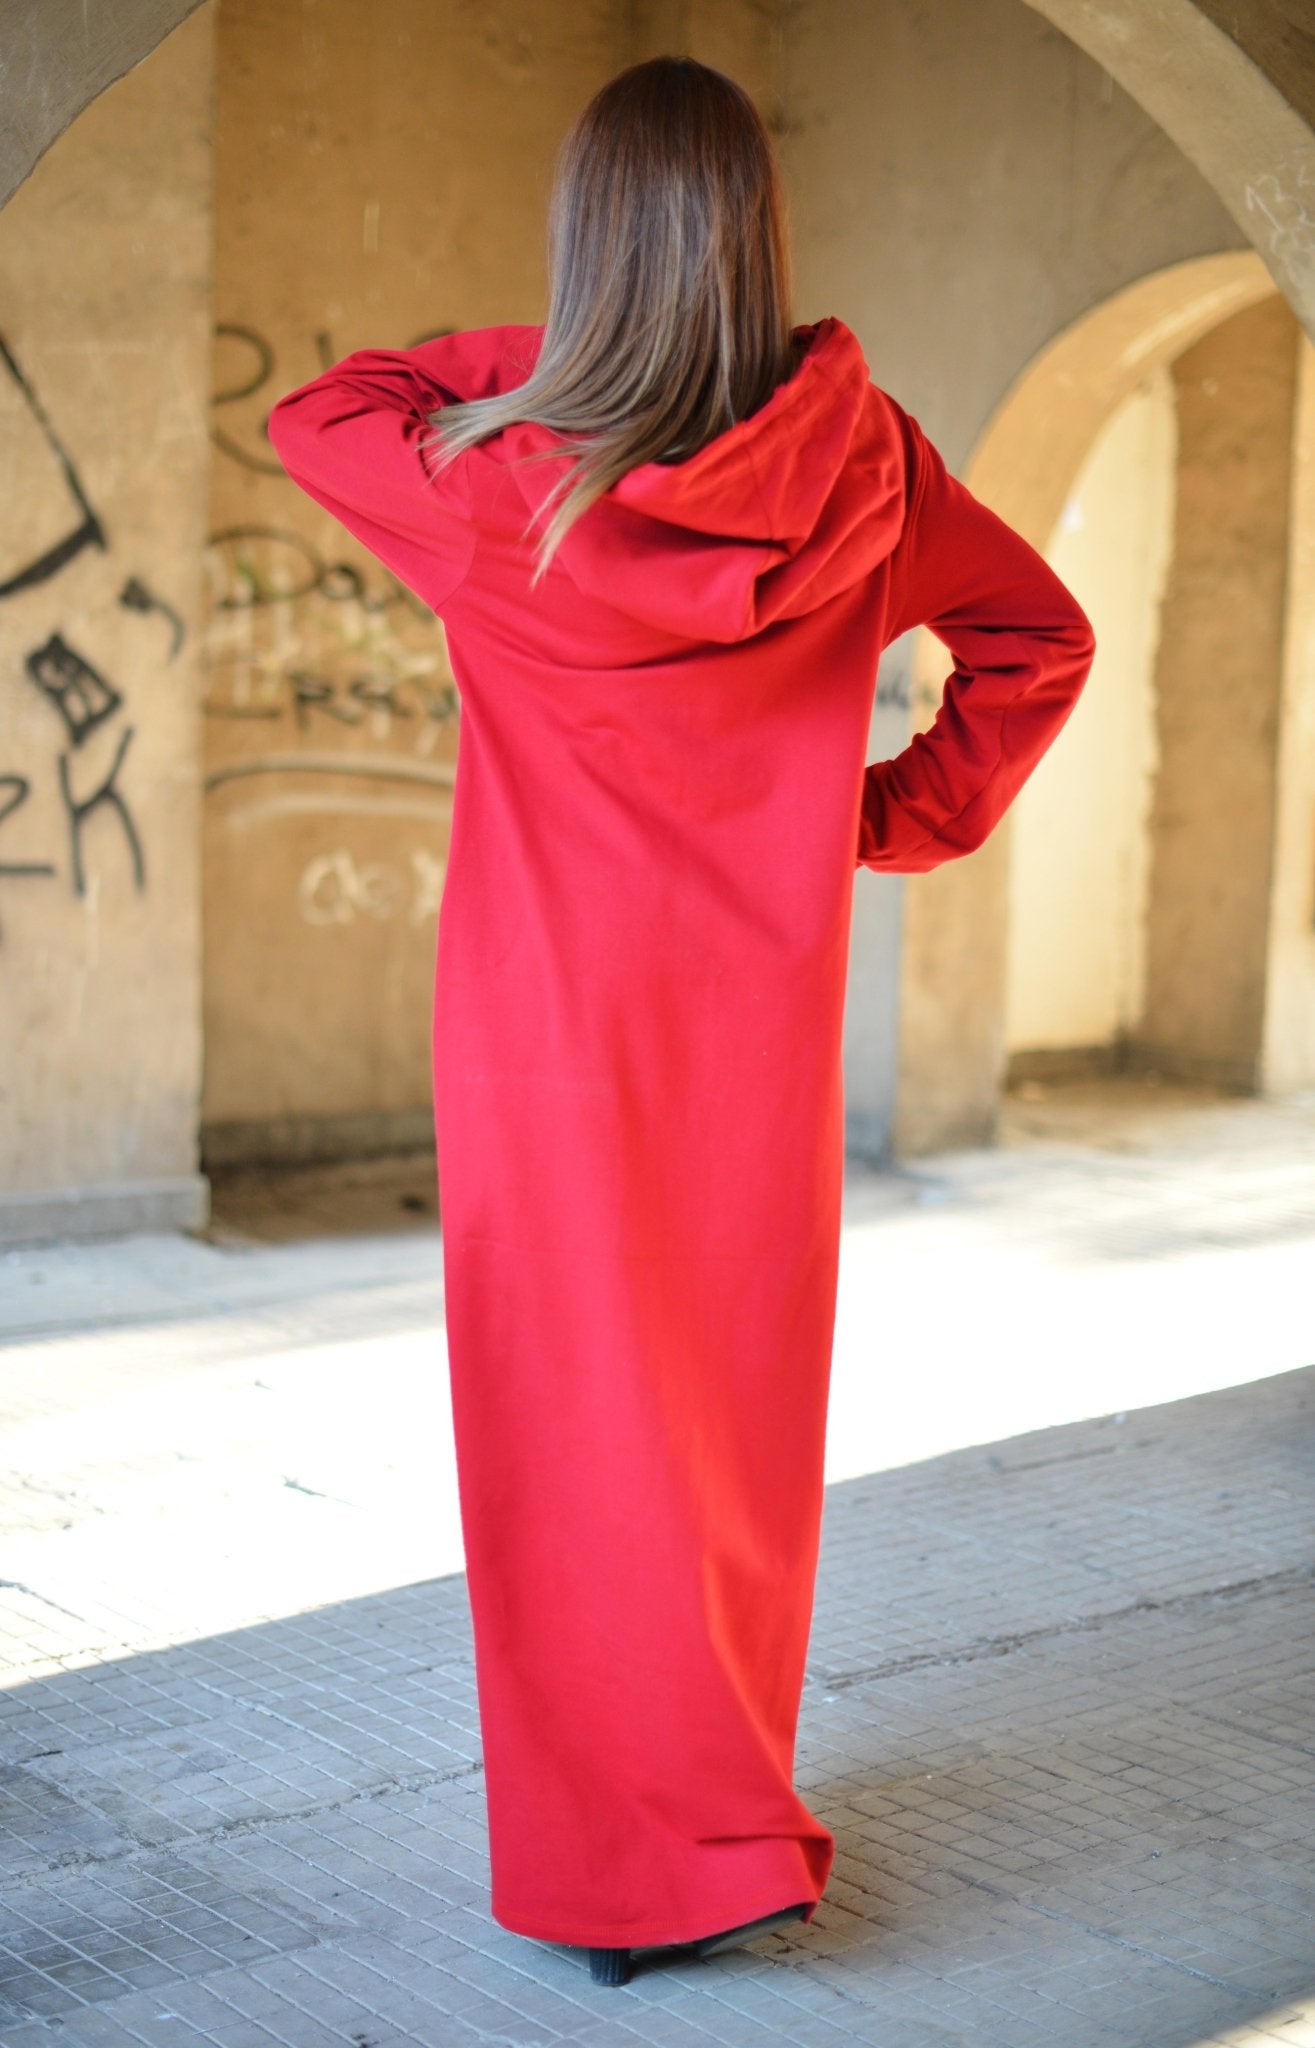 Autumn Red Hooded Maxi Dress IREN - EUG FASHION EugFashion 